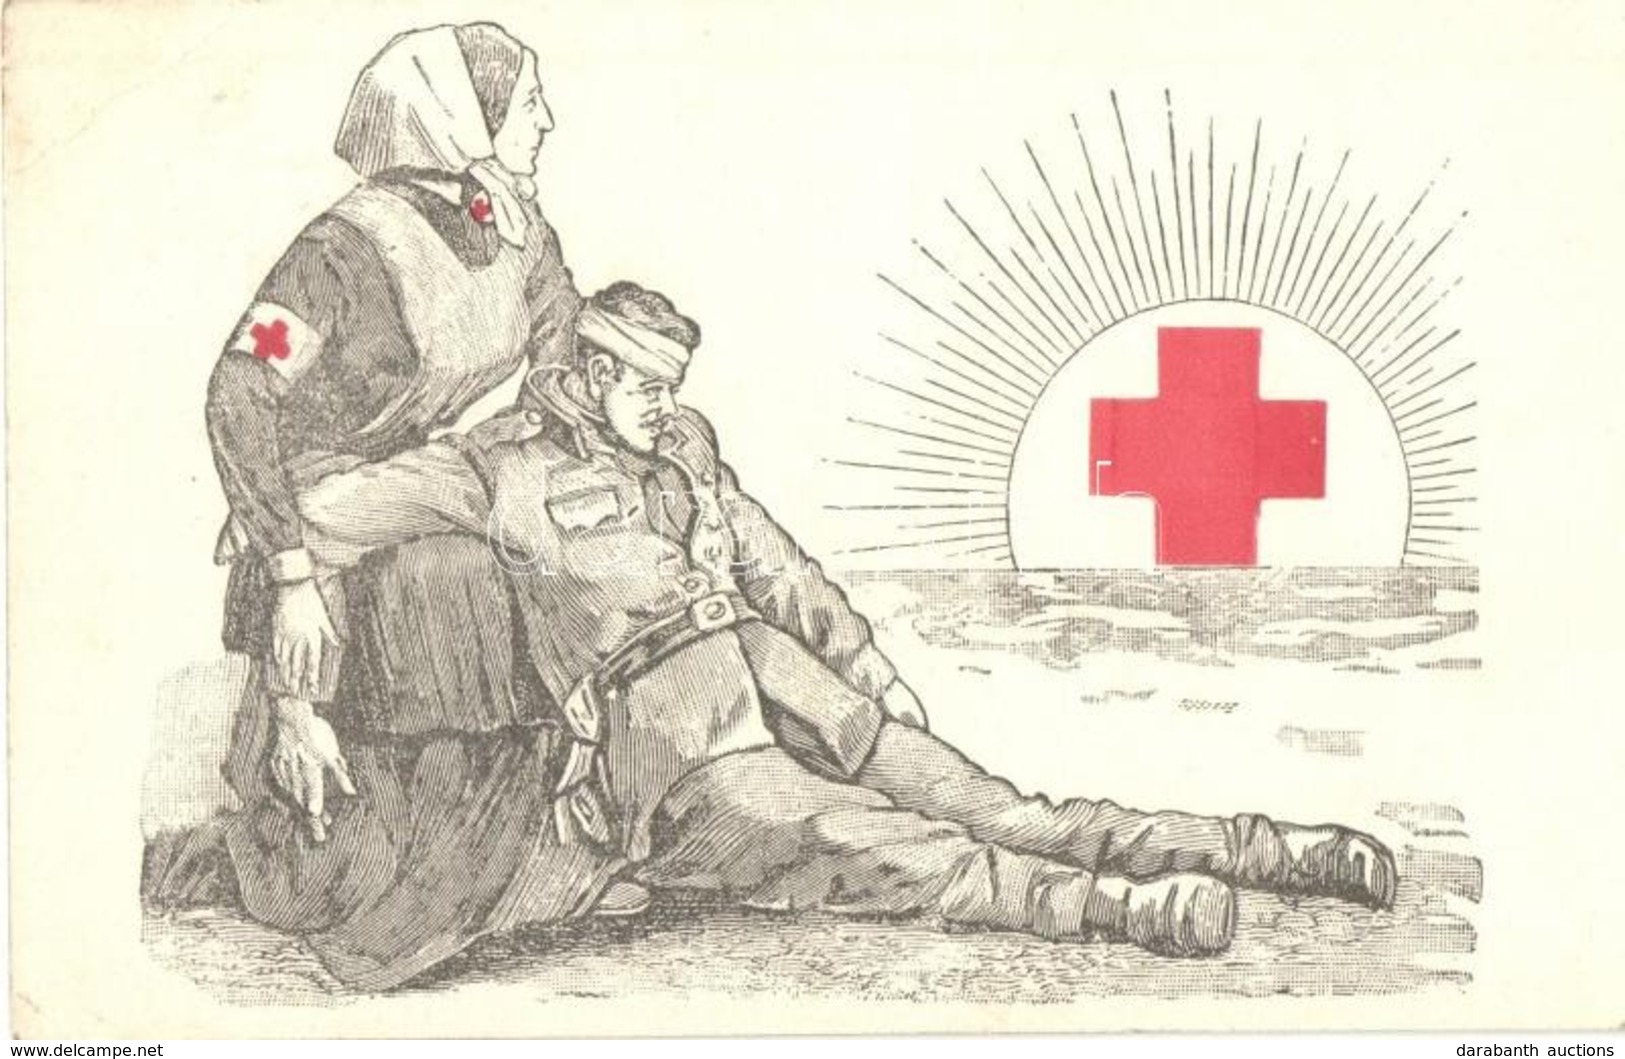 T2/T3 1915 A Vörös Kereszt Egyesület Segélylapja / WWI K.u.K. Red Cross Military Charity Propaganda Card  (EK) - Ohne Zuordnung